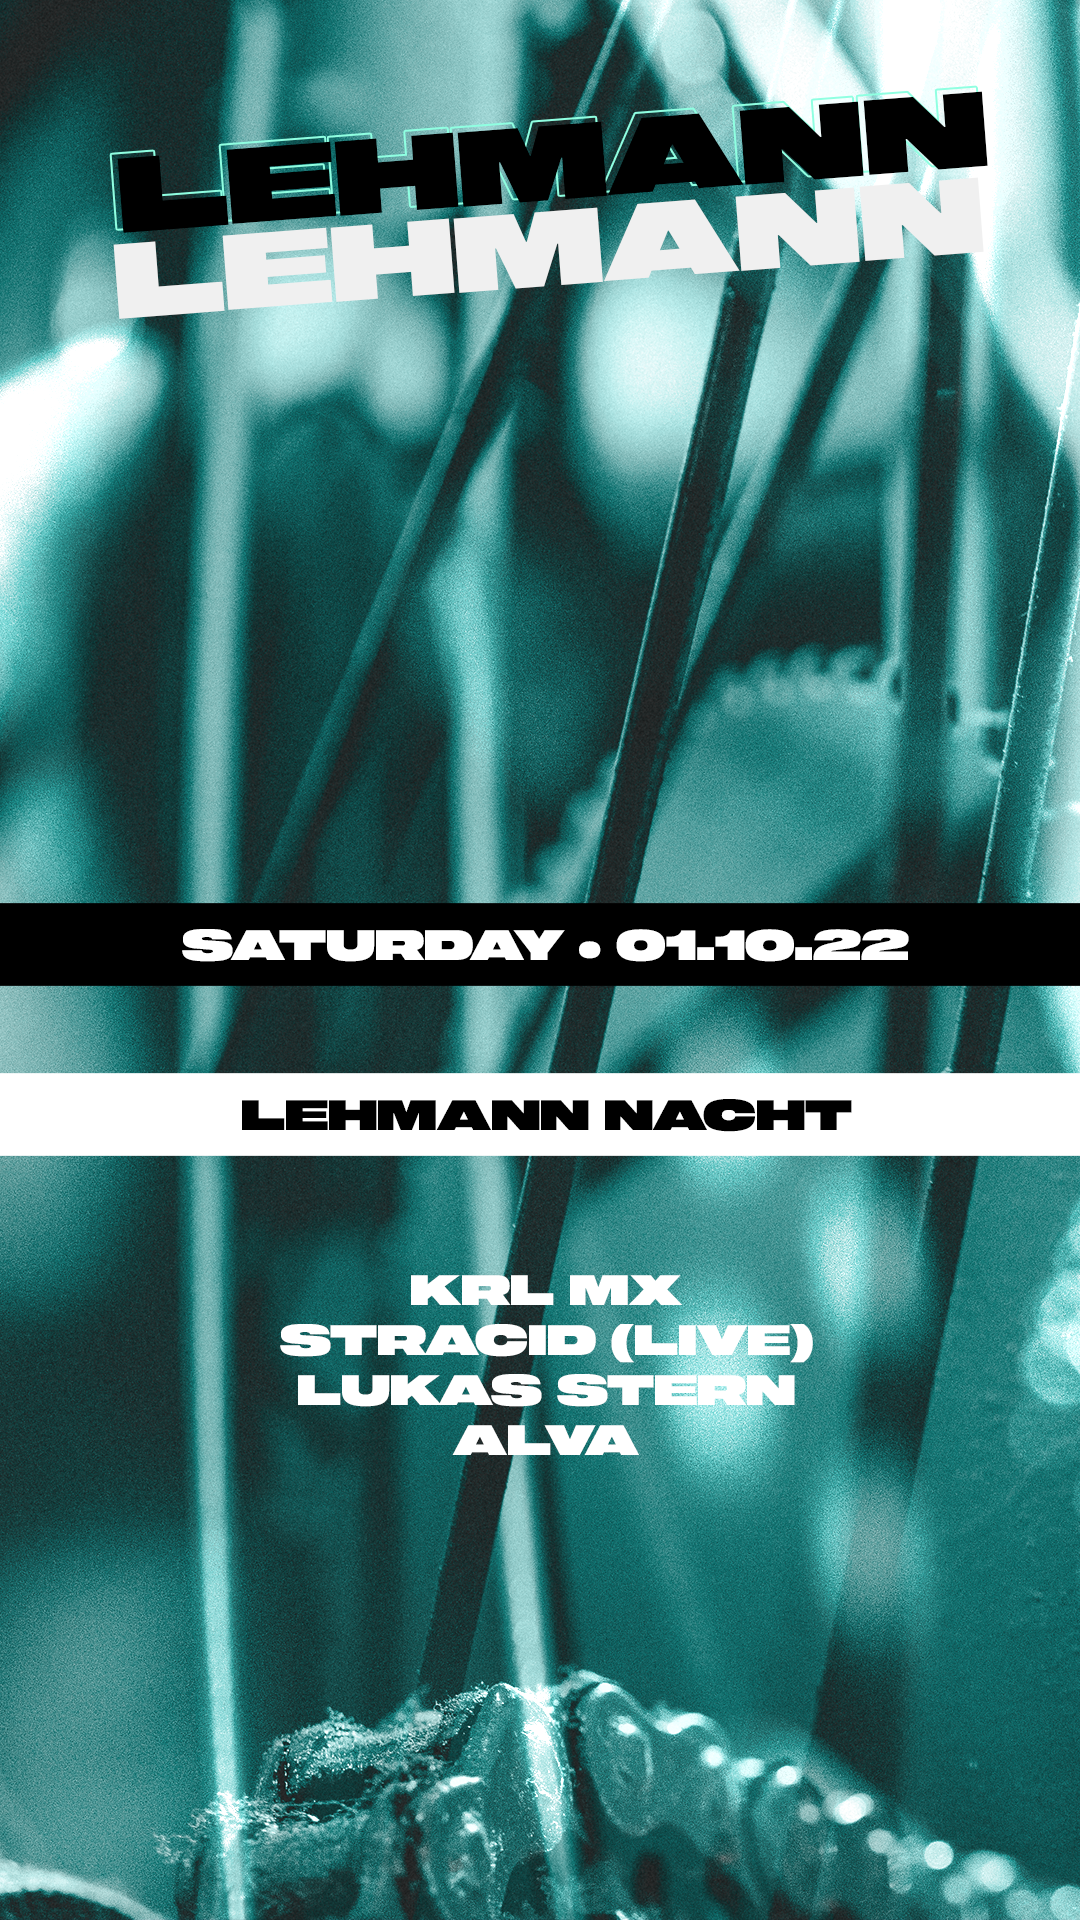 Lehmann Nacht (01.10.22) - フライヤー表